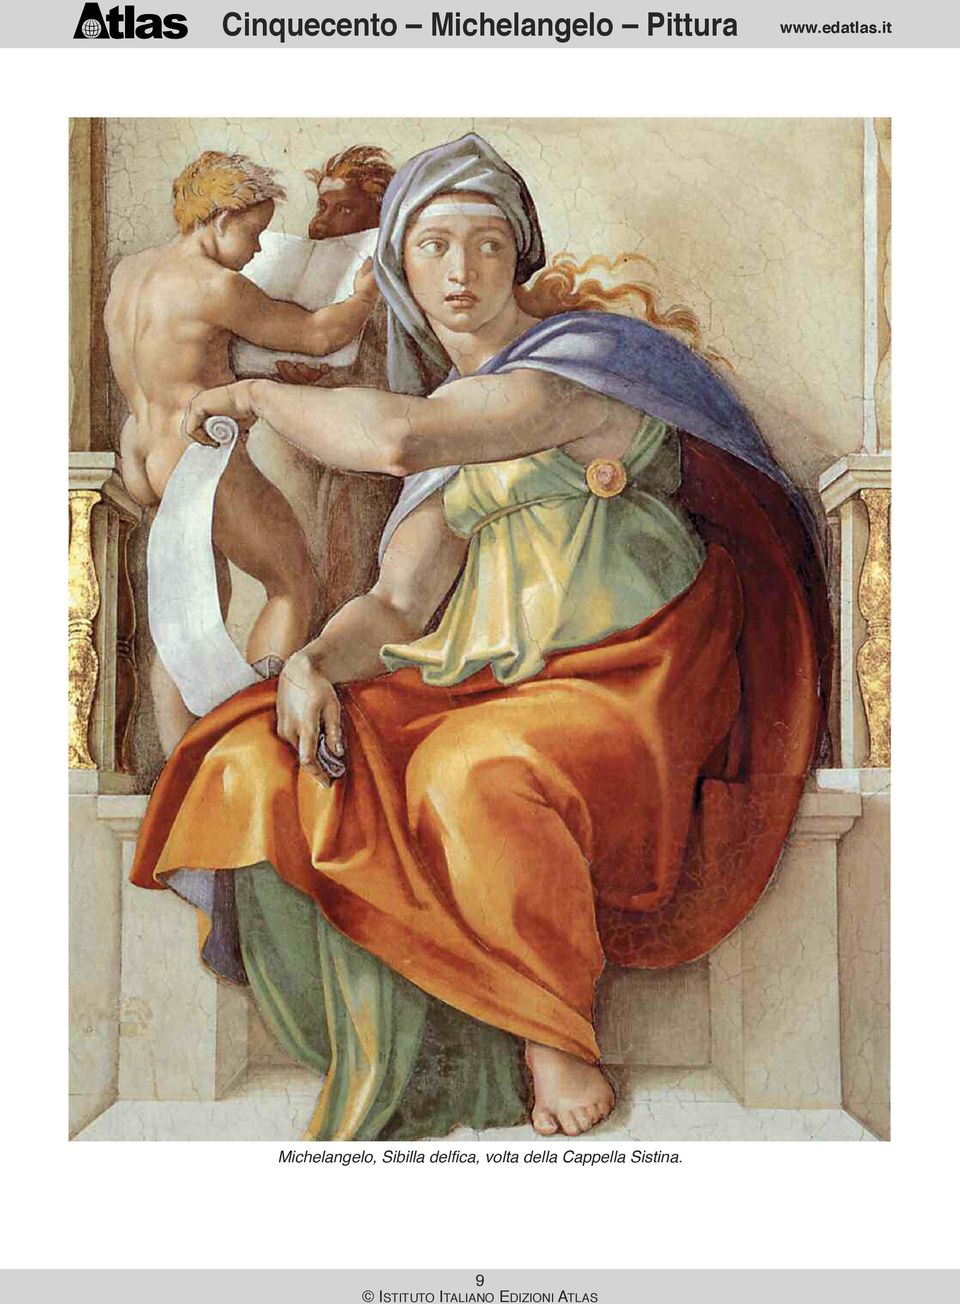 Michelangelo, Sibilla